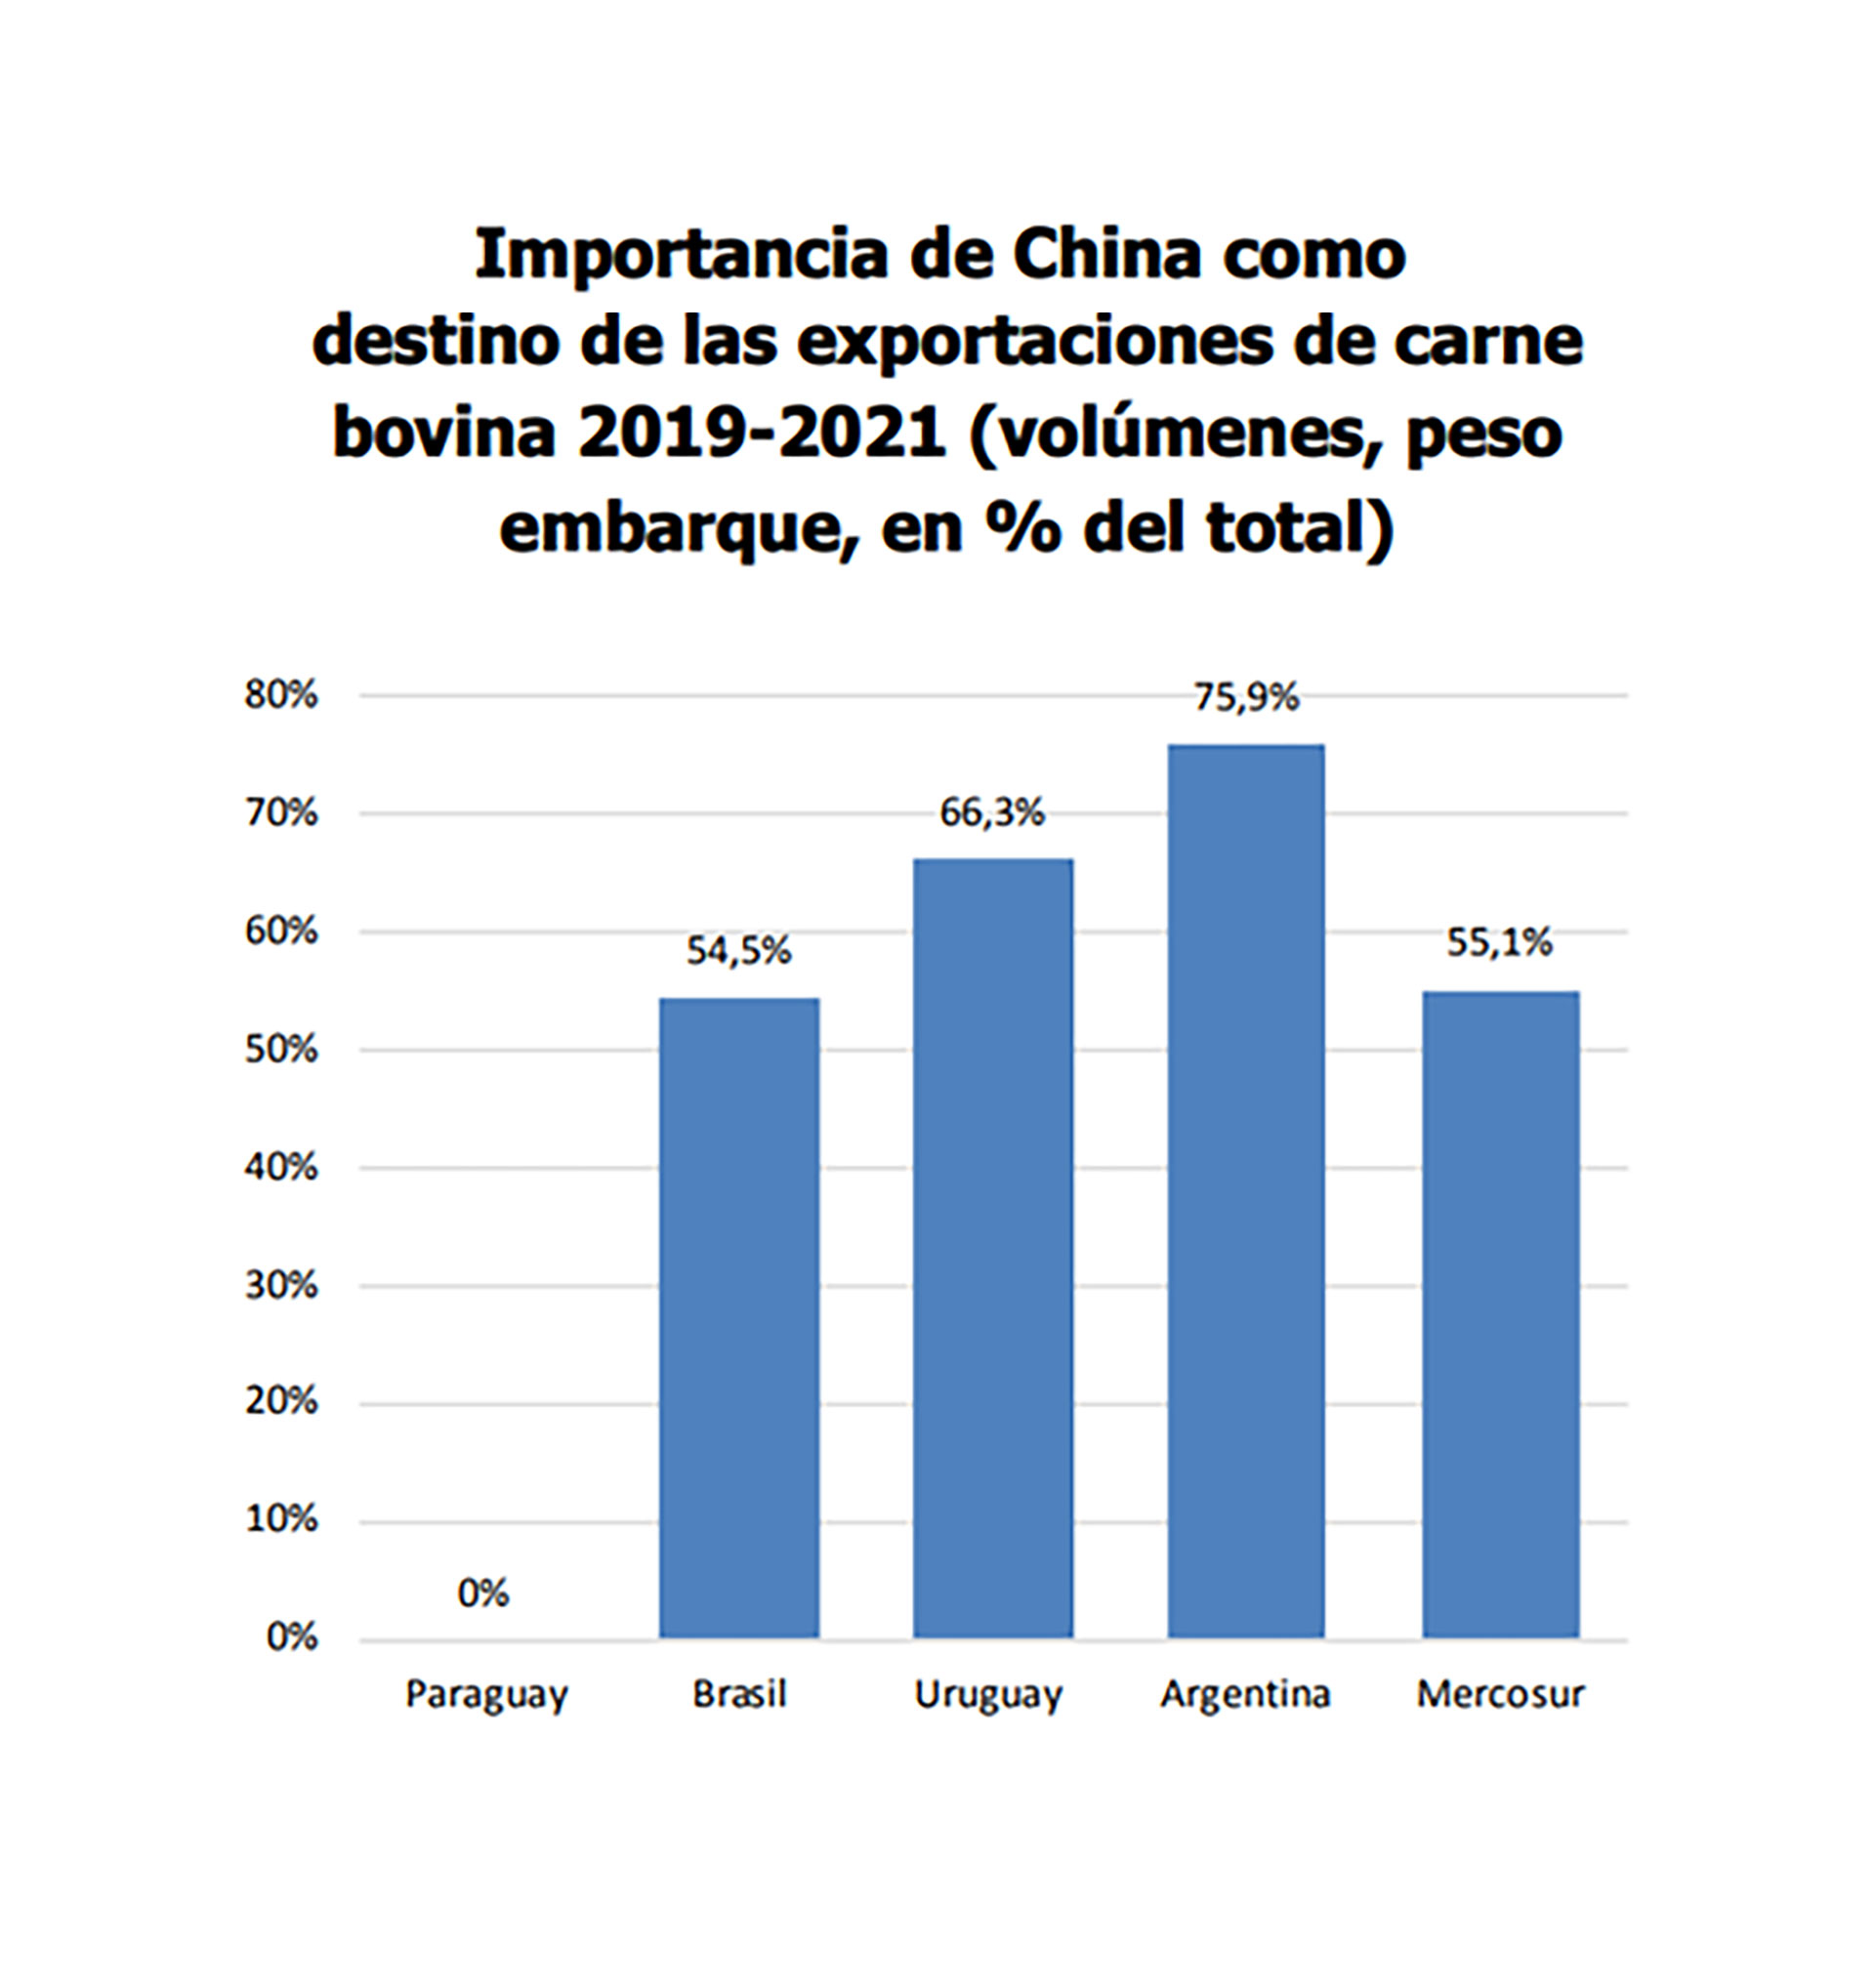 El informe muestra que en materia de exportaciones de carne Argentina tiene una altísima dependencia de China